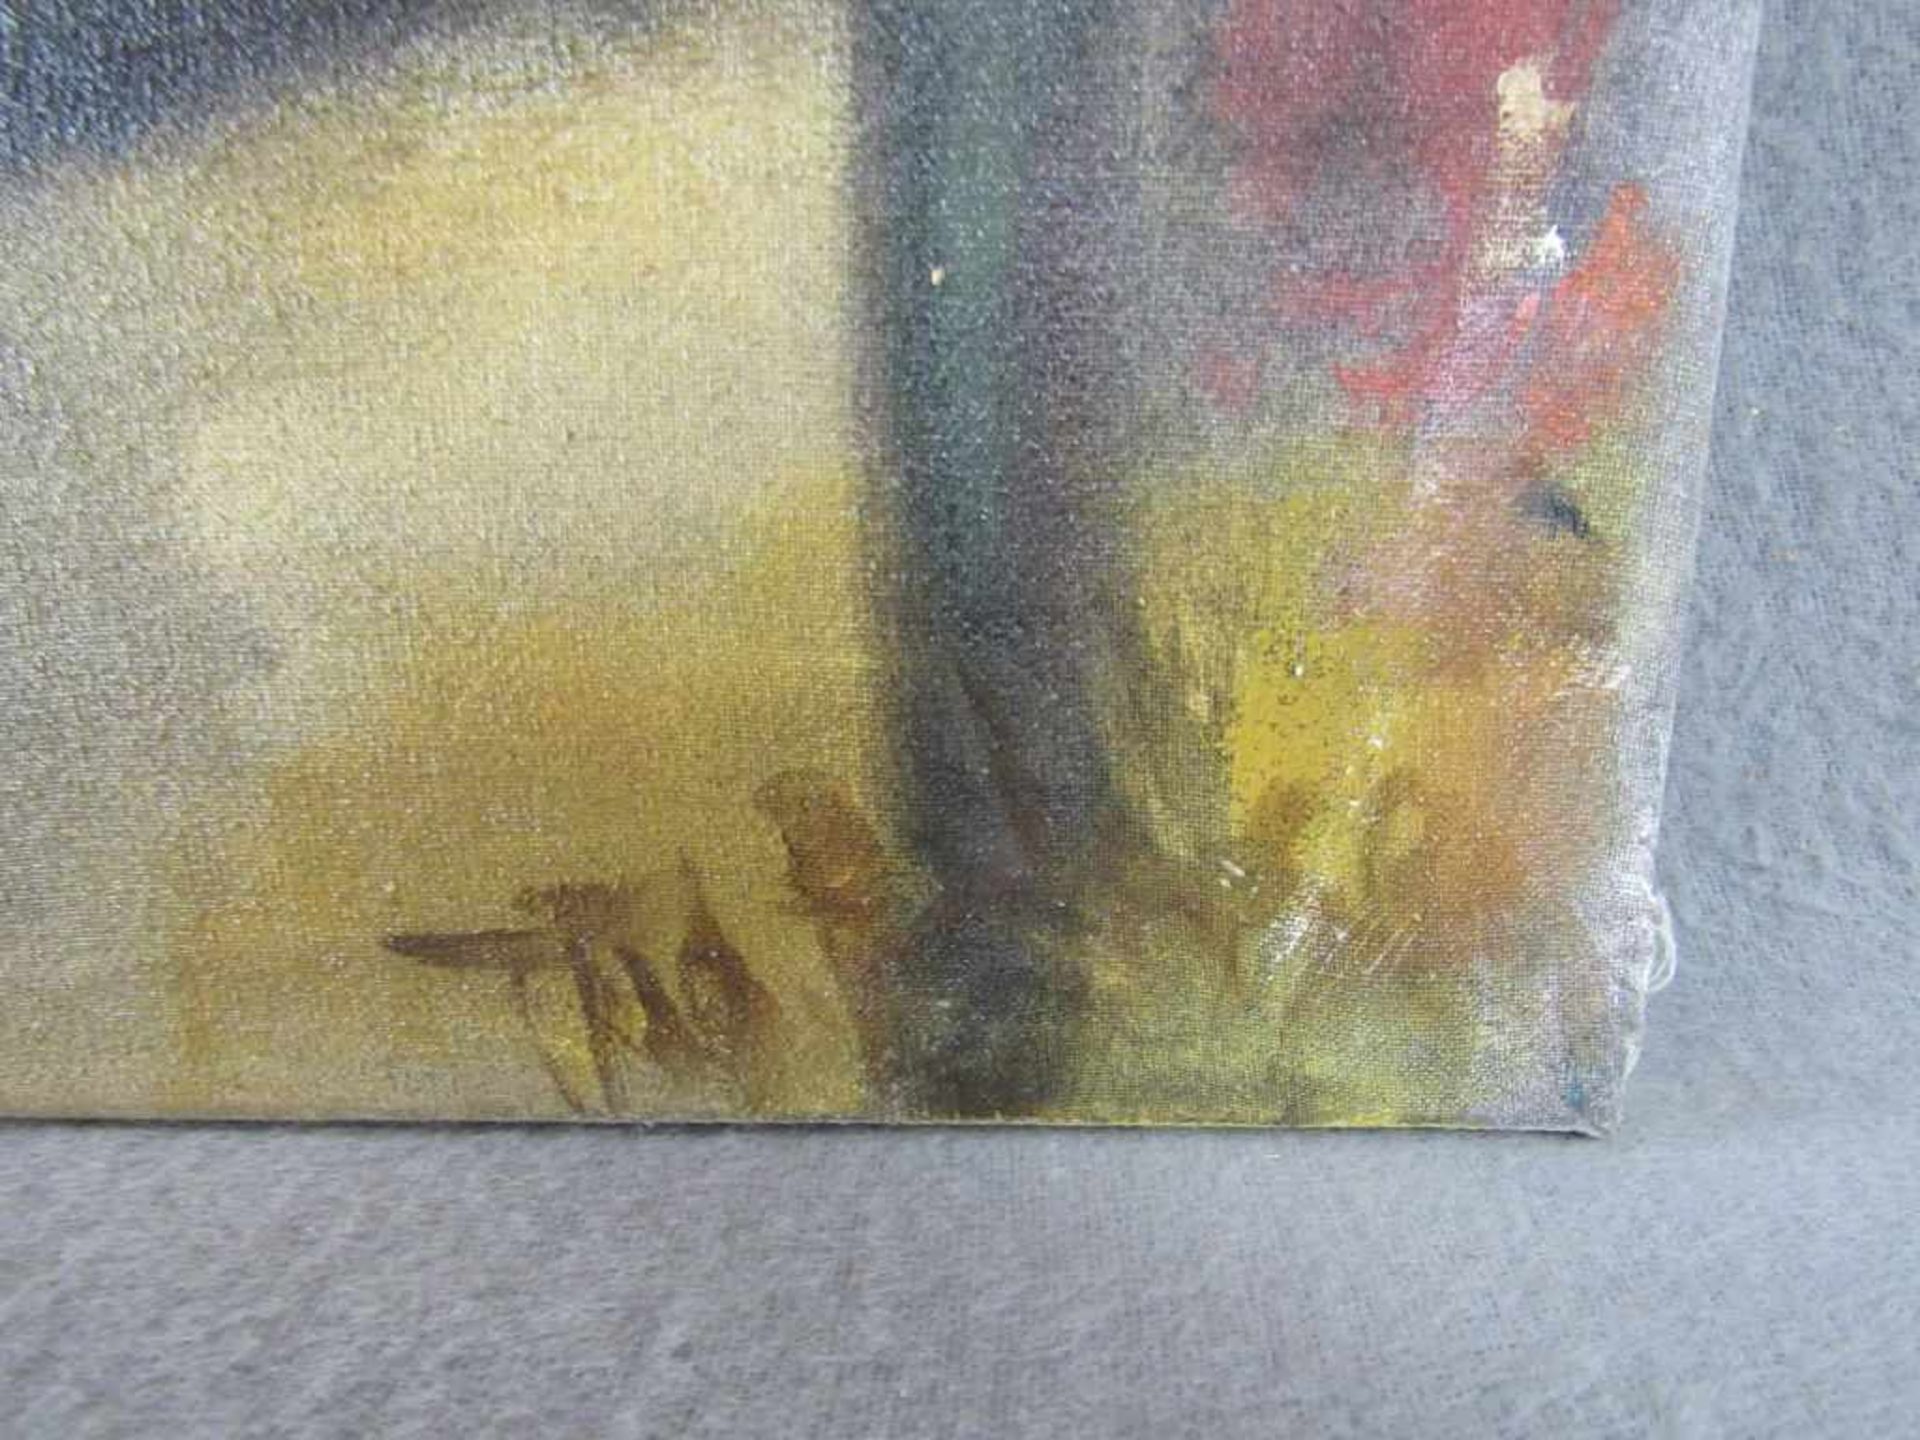 Gemälde Aktszene Öl auf Leinwand unleserlich signiert 55x70cm - Image 2 of 3